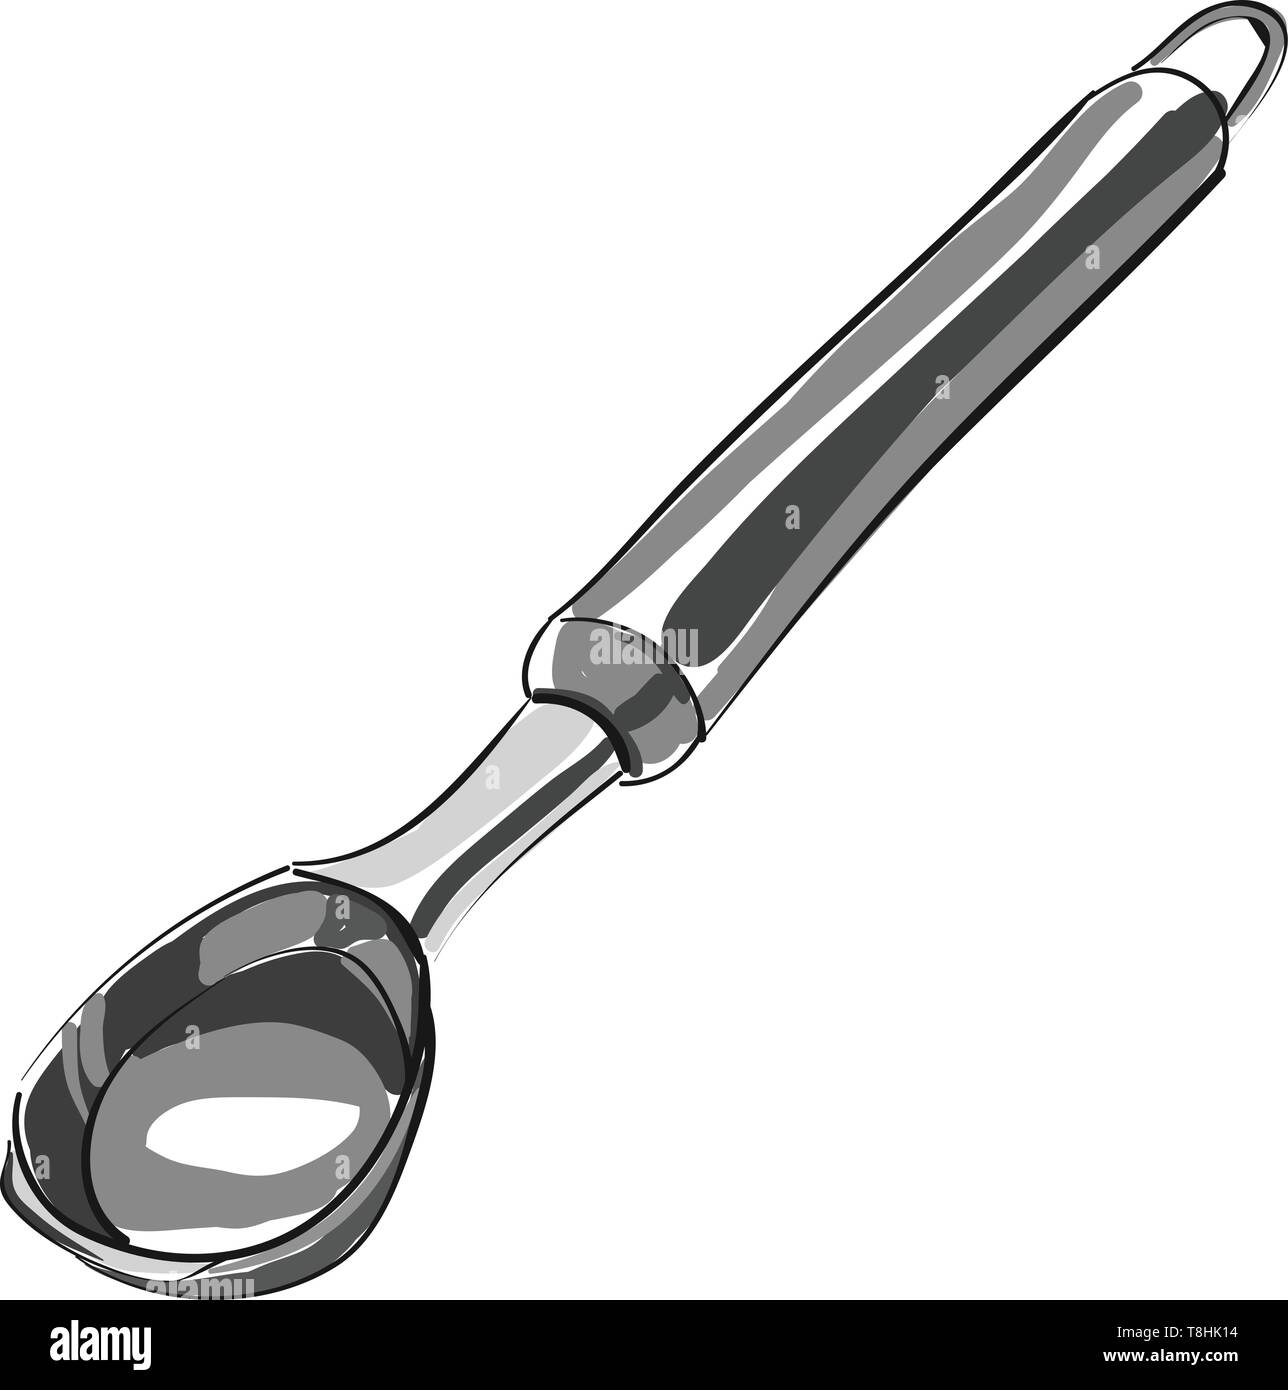 Dessin au crayon de couleur gris d'une spatule avec un bol profond, une poignée ergonomique et d'une télévision bords latéraux qui permet de serrer jusqu'à l'autre, vector, colo Illustration de Vecteur